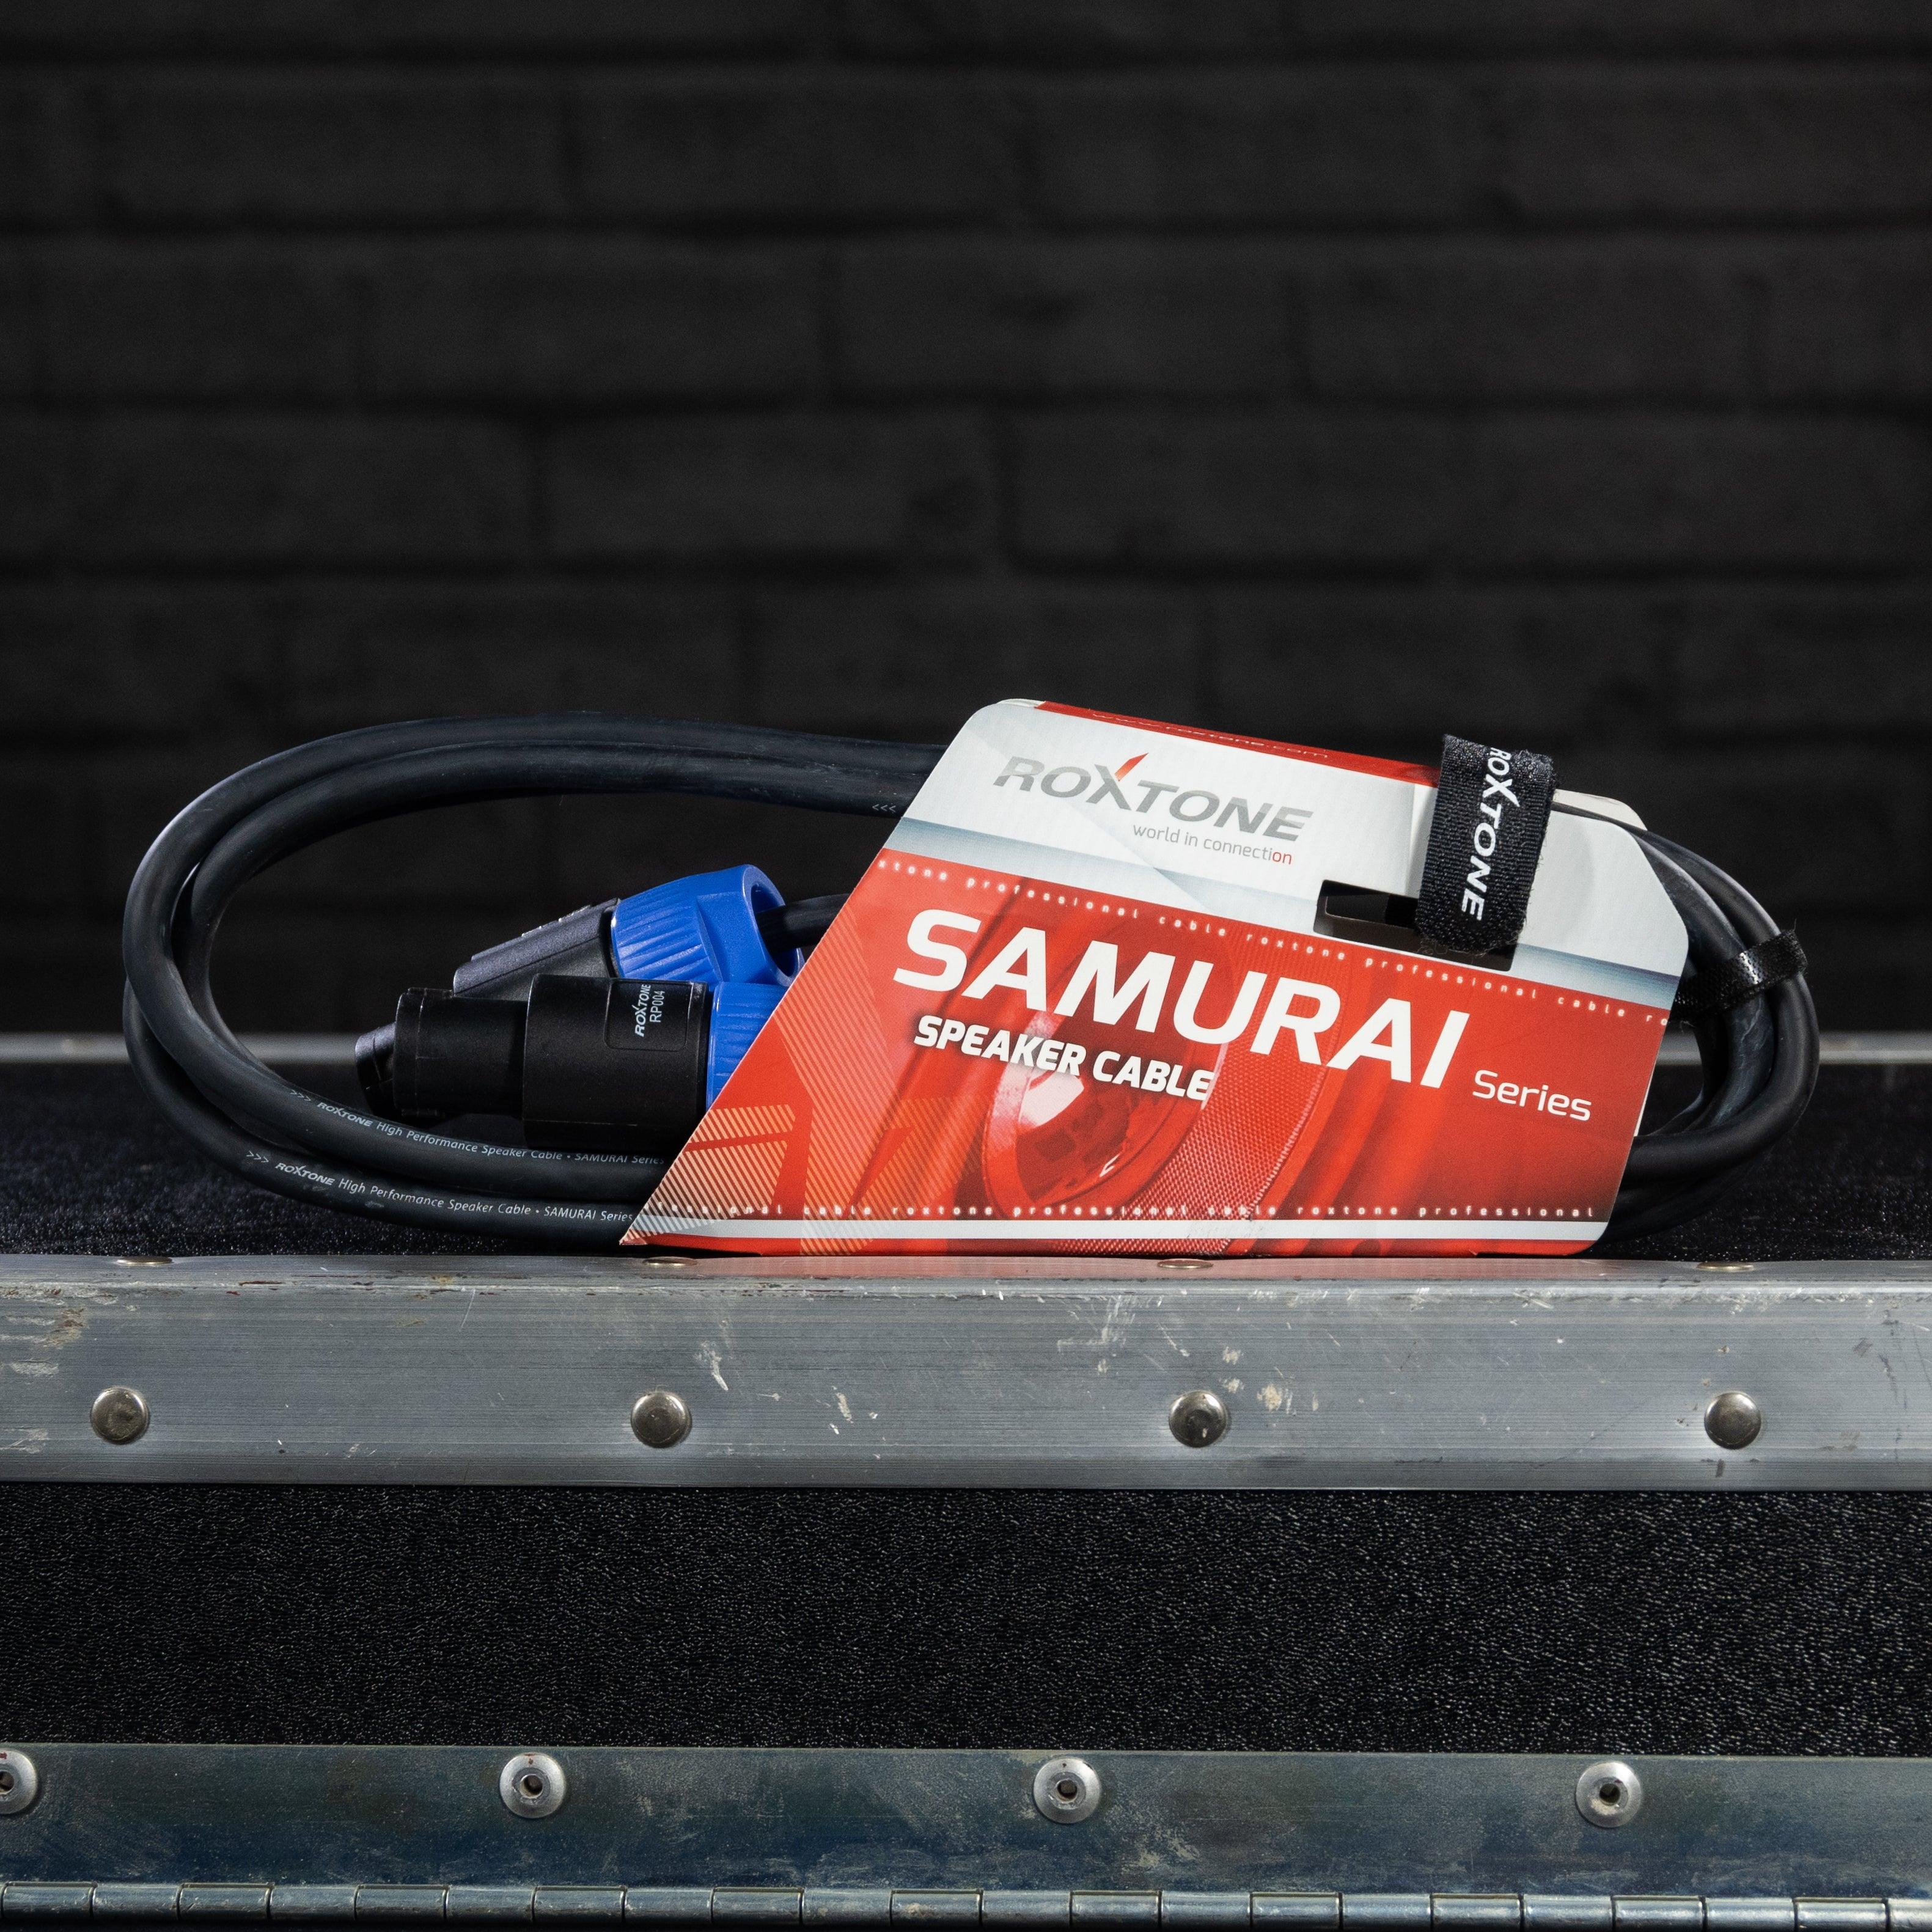 Roxtone Samurai Series Speaker Cable - Impulse Music Co.